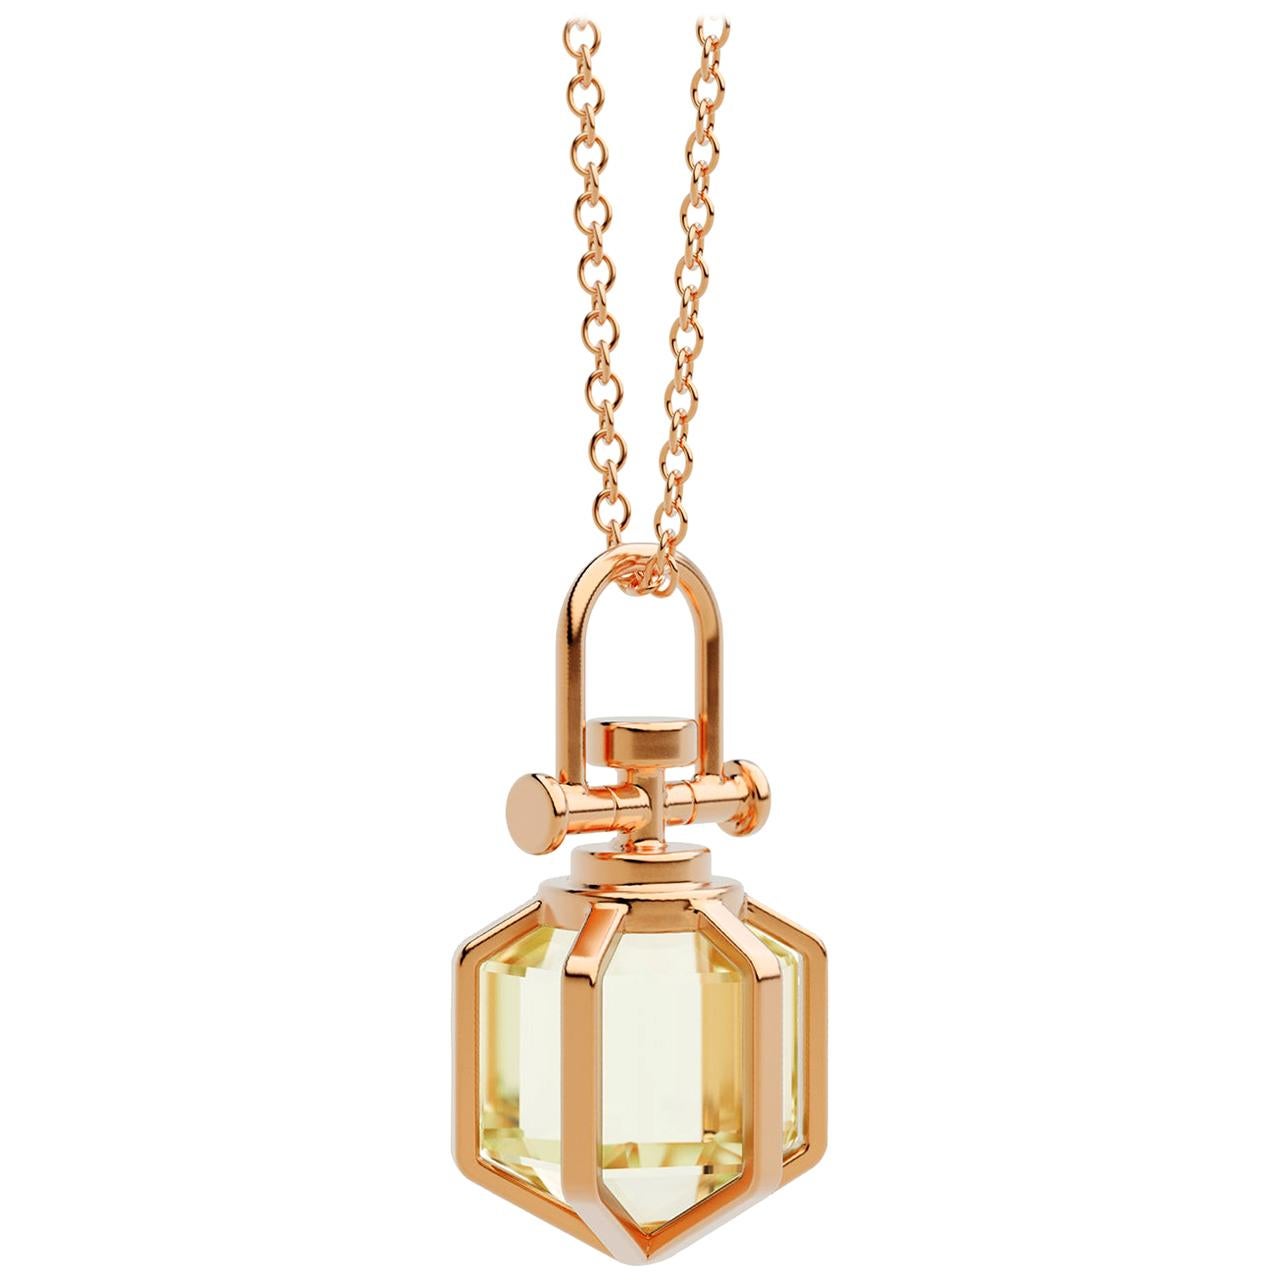 Modern Sacred 18k Solid Rose Gold Talisman Pendant Necklace with Lemon Citrine For Sale